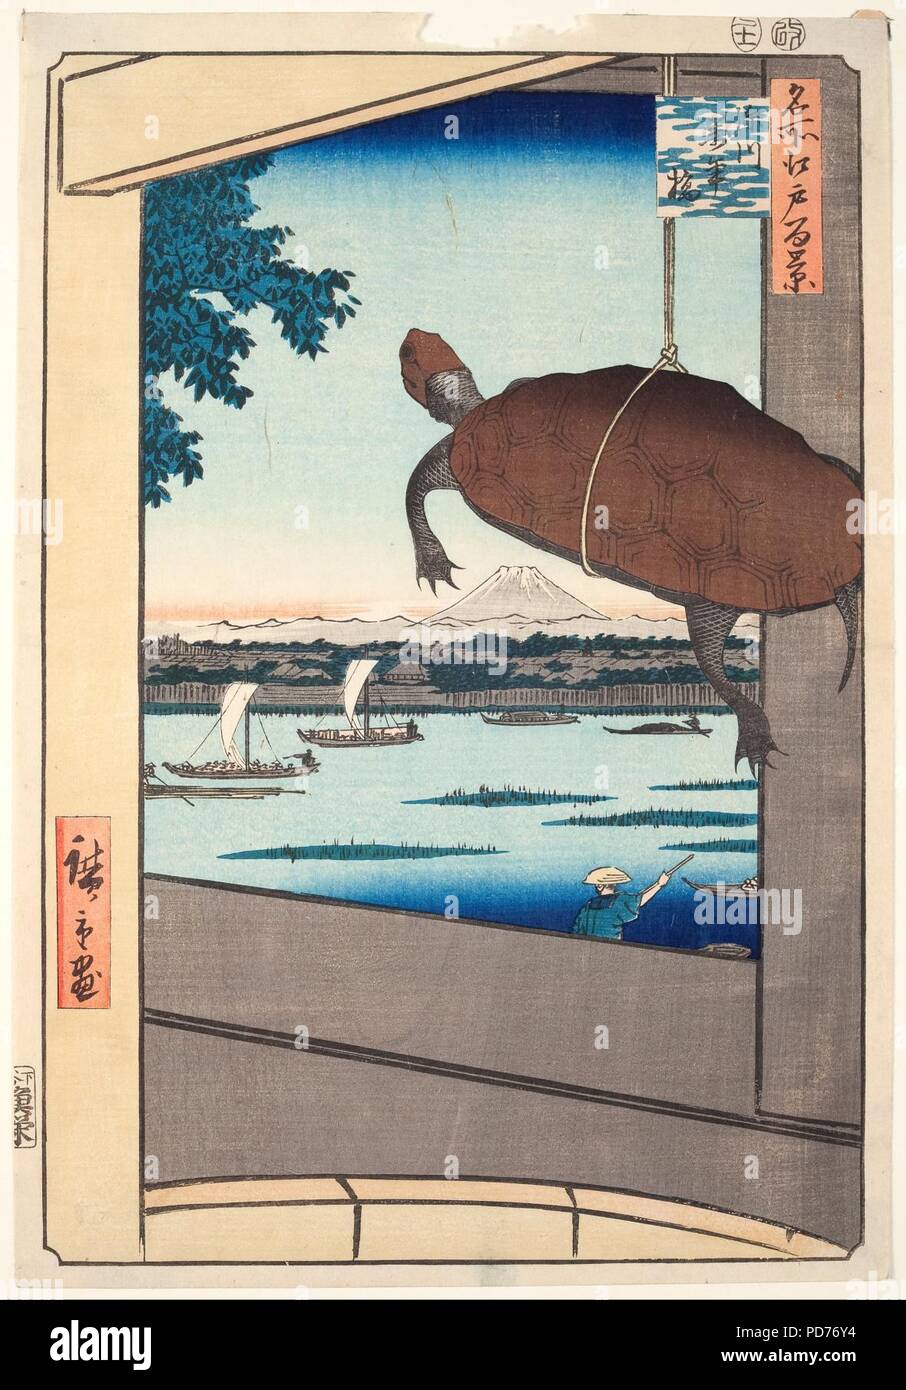 Ando Hiroshige - Mannen Brücke, Fukagawa, aus der Serie "100 berühmten Ansichten von Edo' - Stockfoto